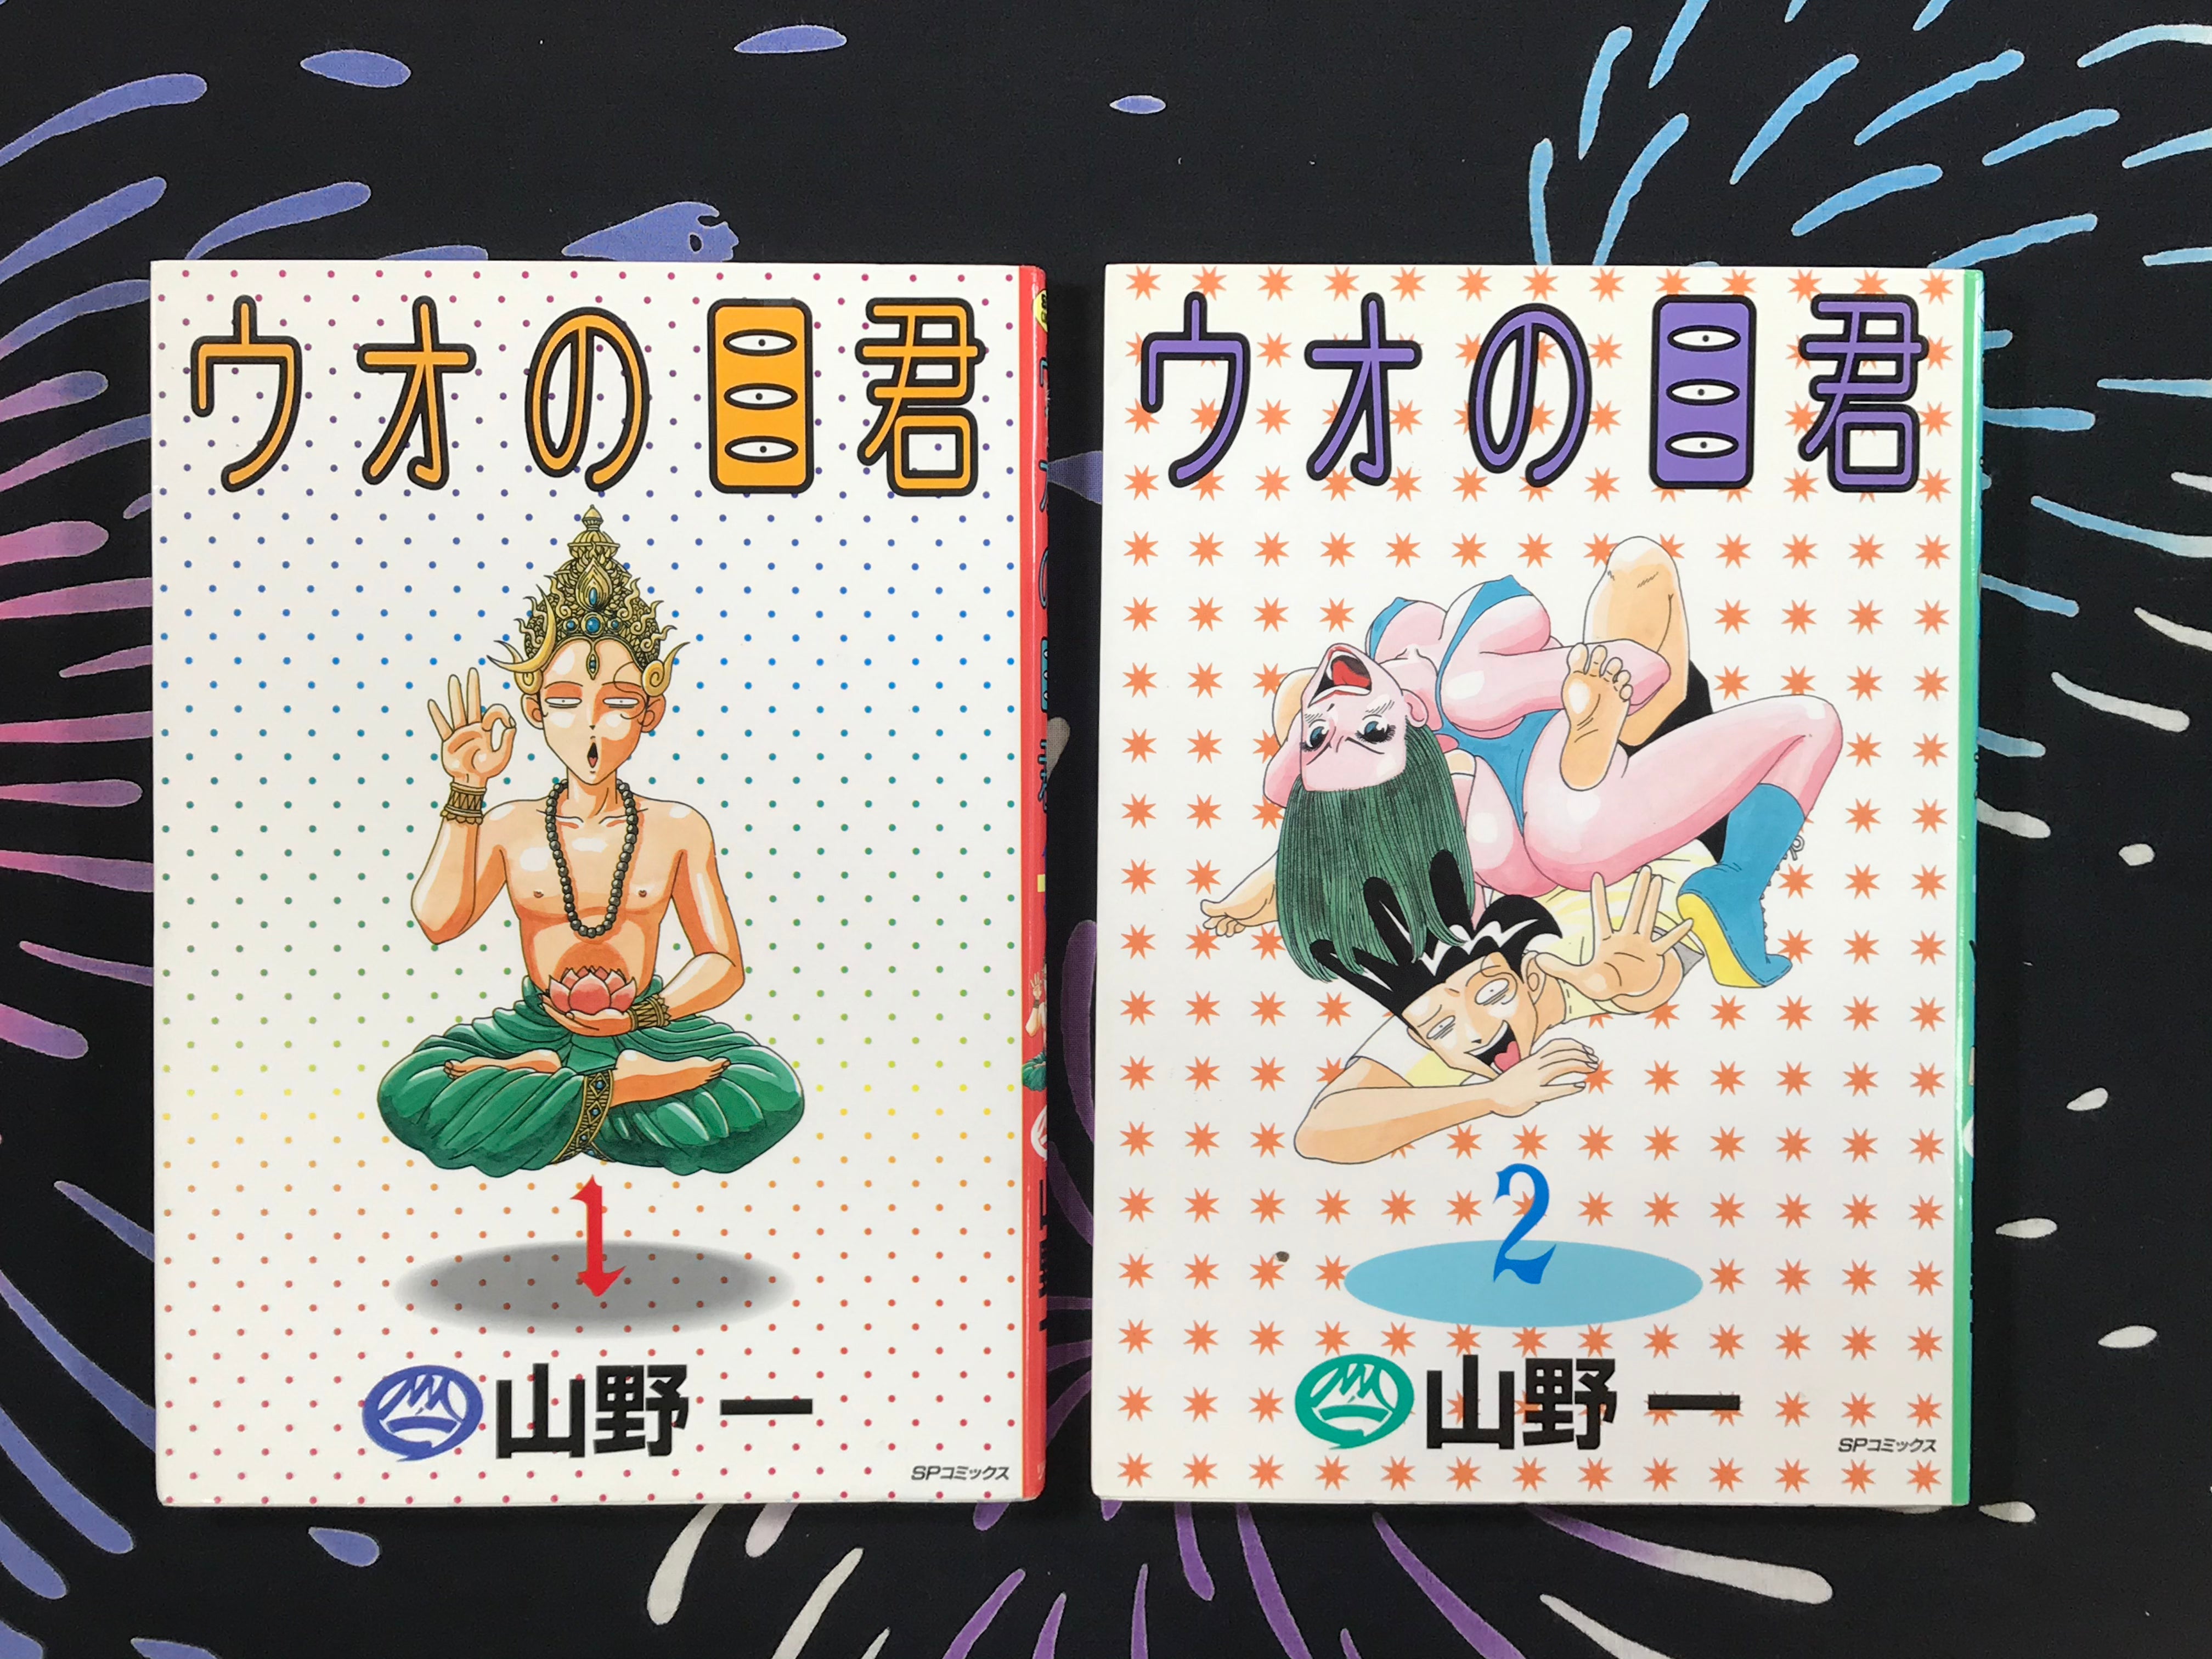 UO no MOKUSHI 1 and 2 by Hajime Yamano (1994)